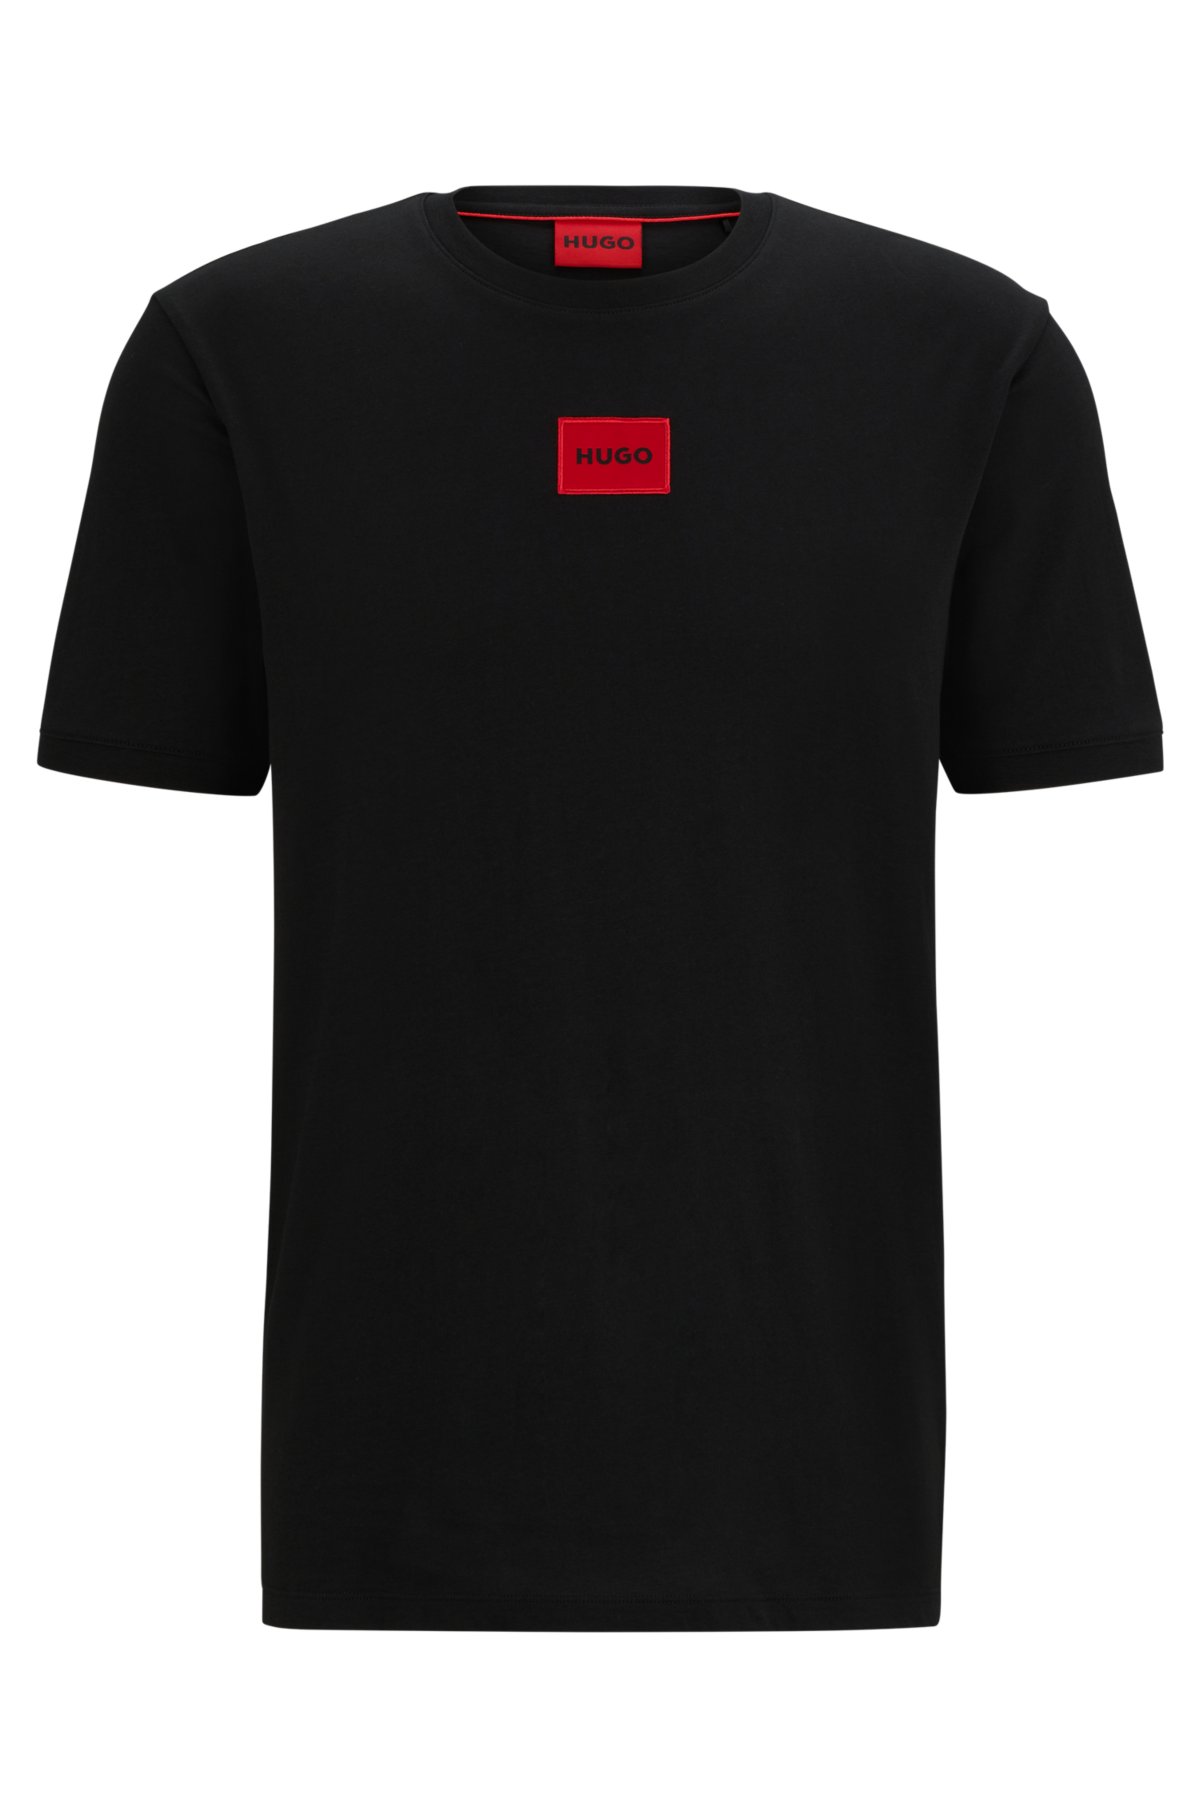 tørre mel Igangværende HUGO - Regular-fit cotton T-shirt with red logo label